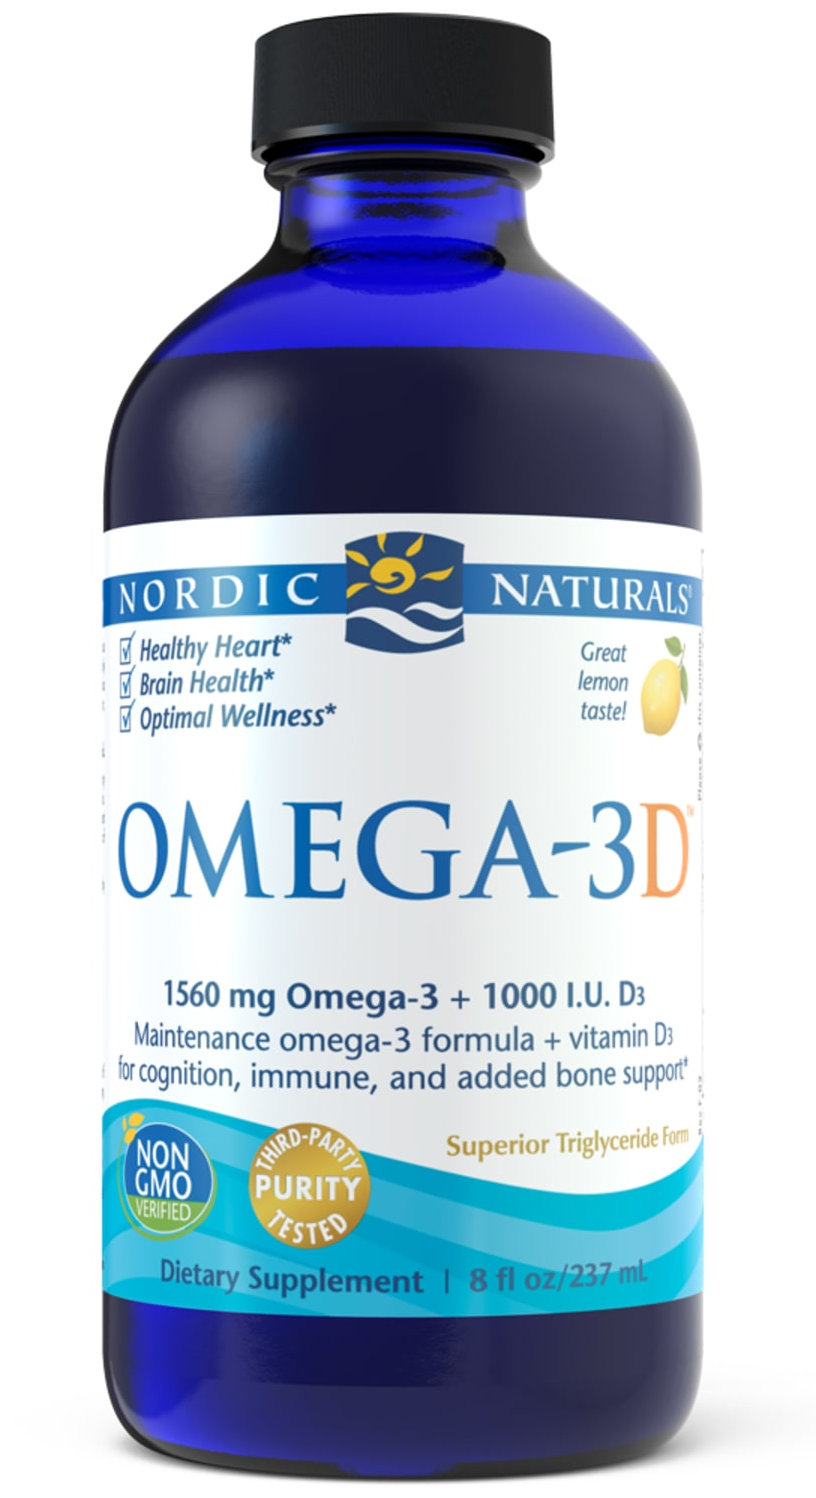 Nordic Naturals Omega-3D | Fish Oil + Vitamin D